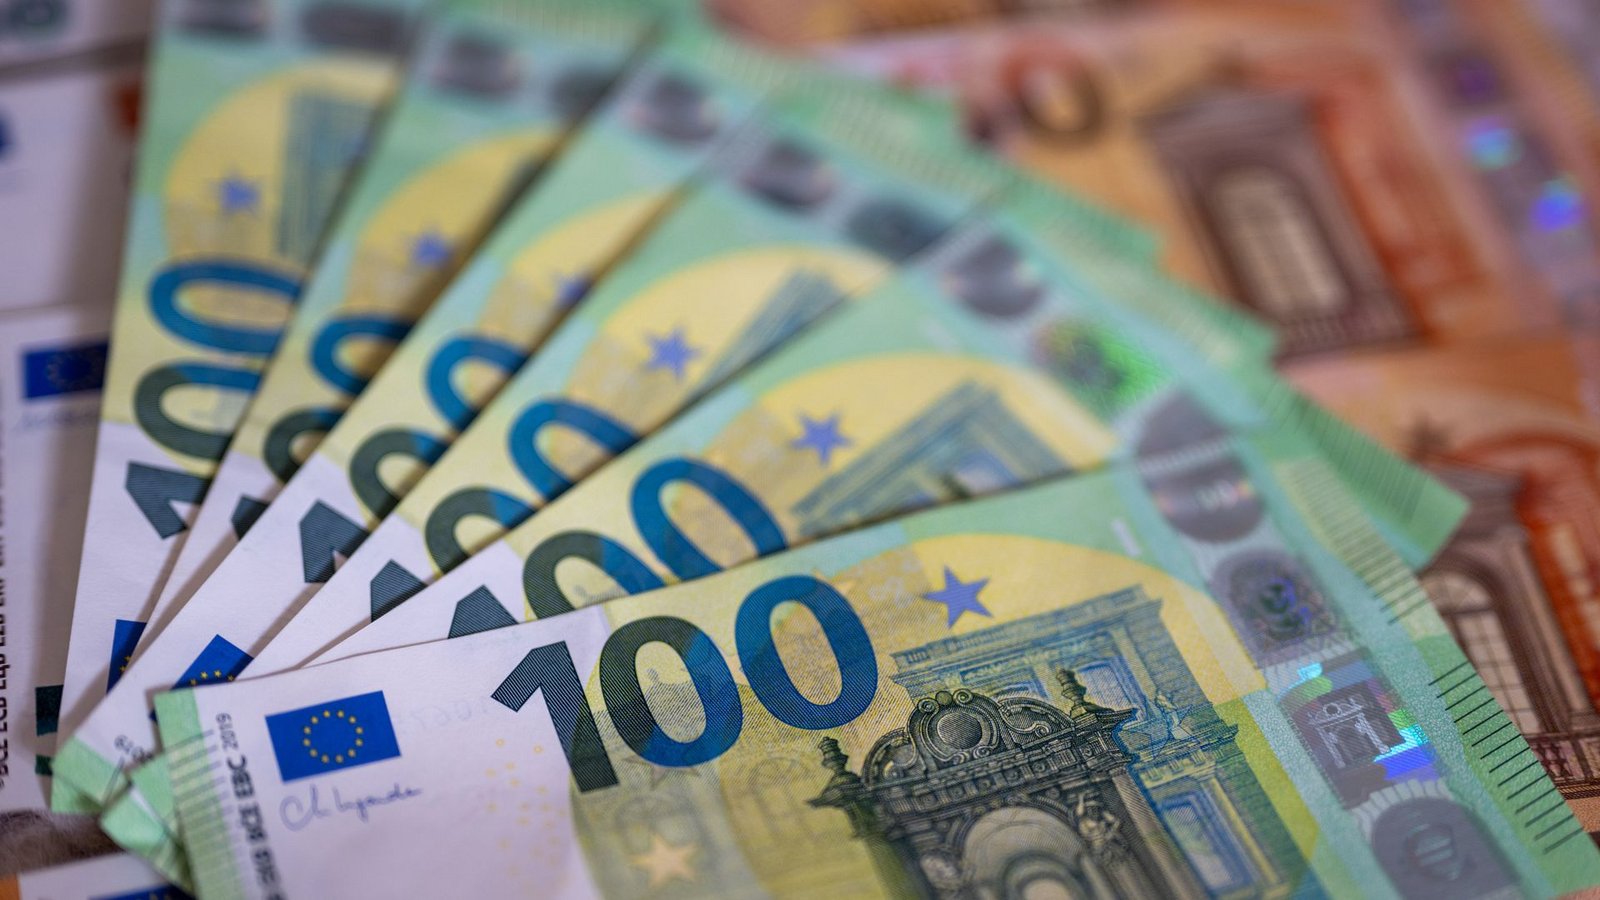 Österreichische Zollbeamte haben eine große Menge Geld beschlagnahmt.Foto: dpa/Monika Skolimowska